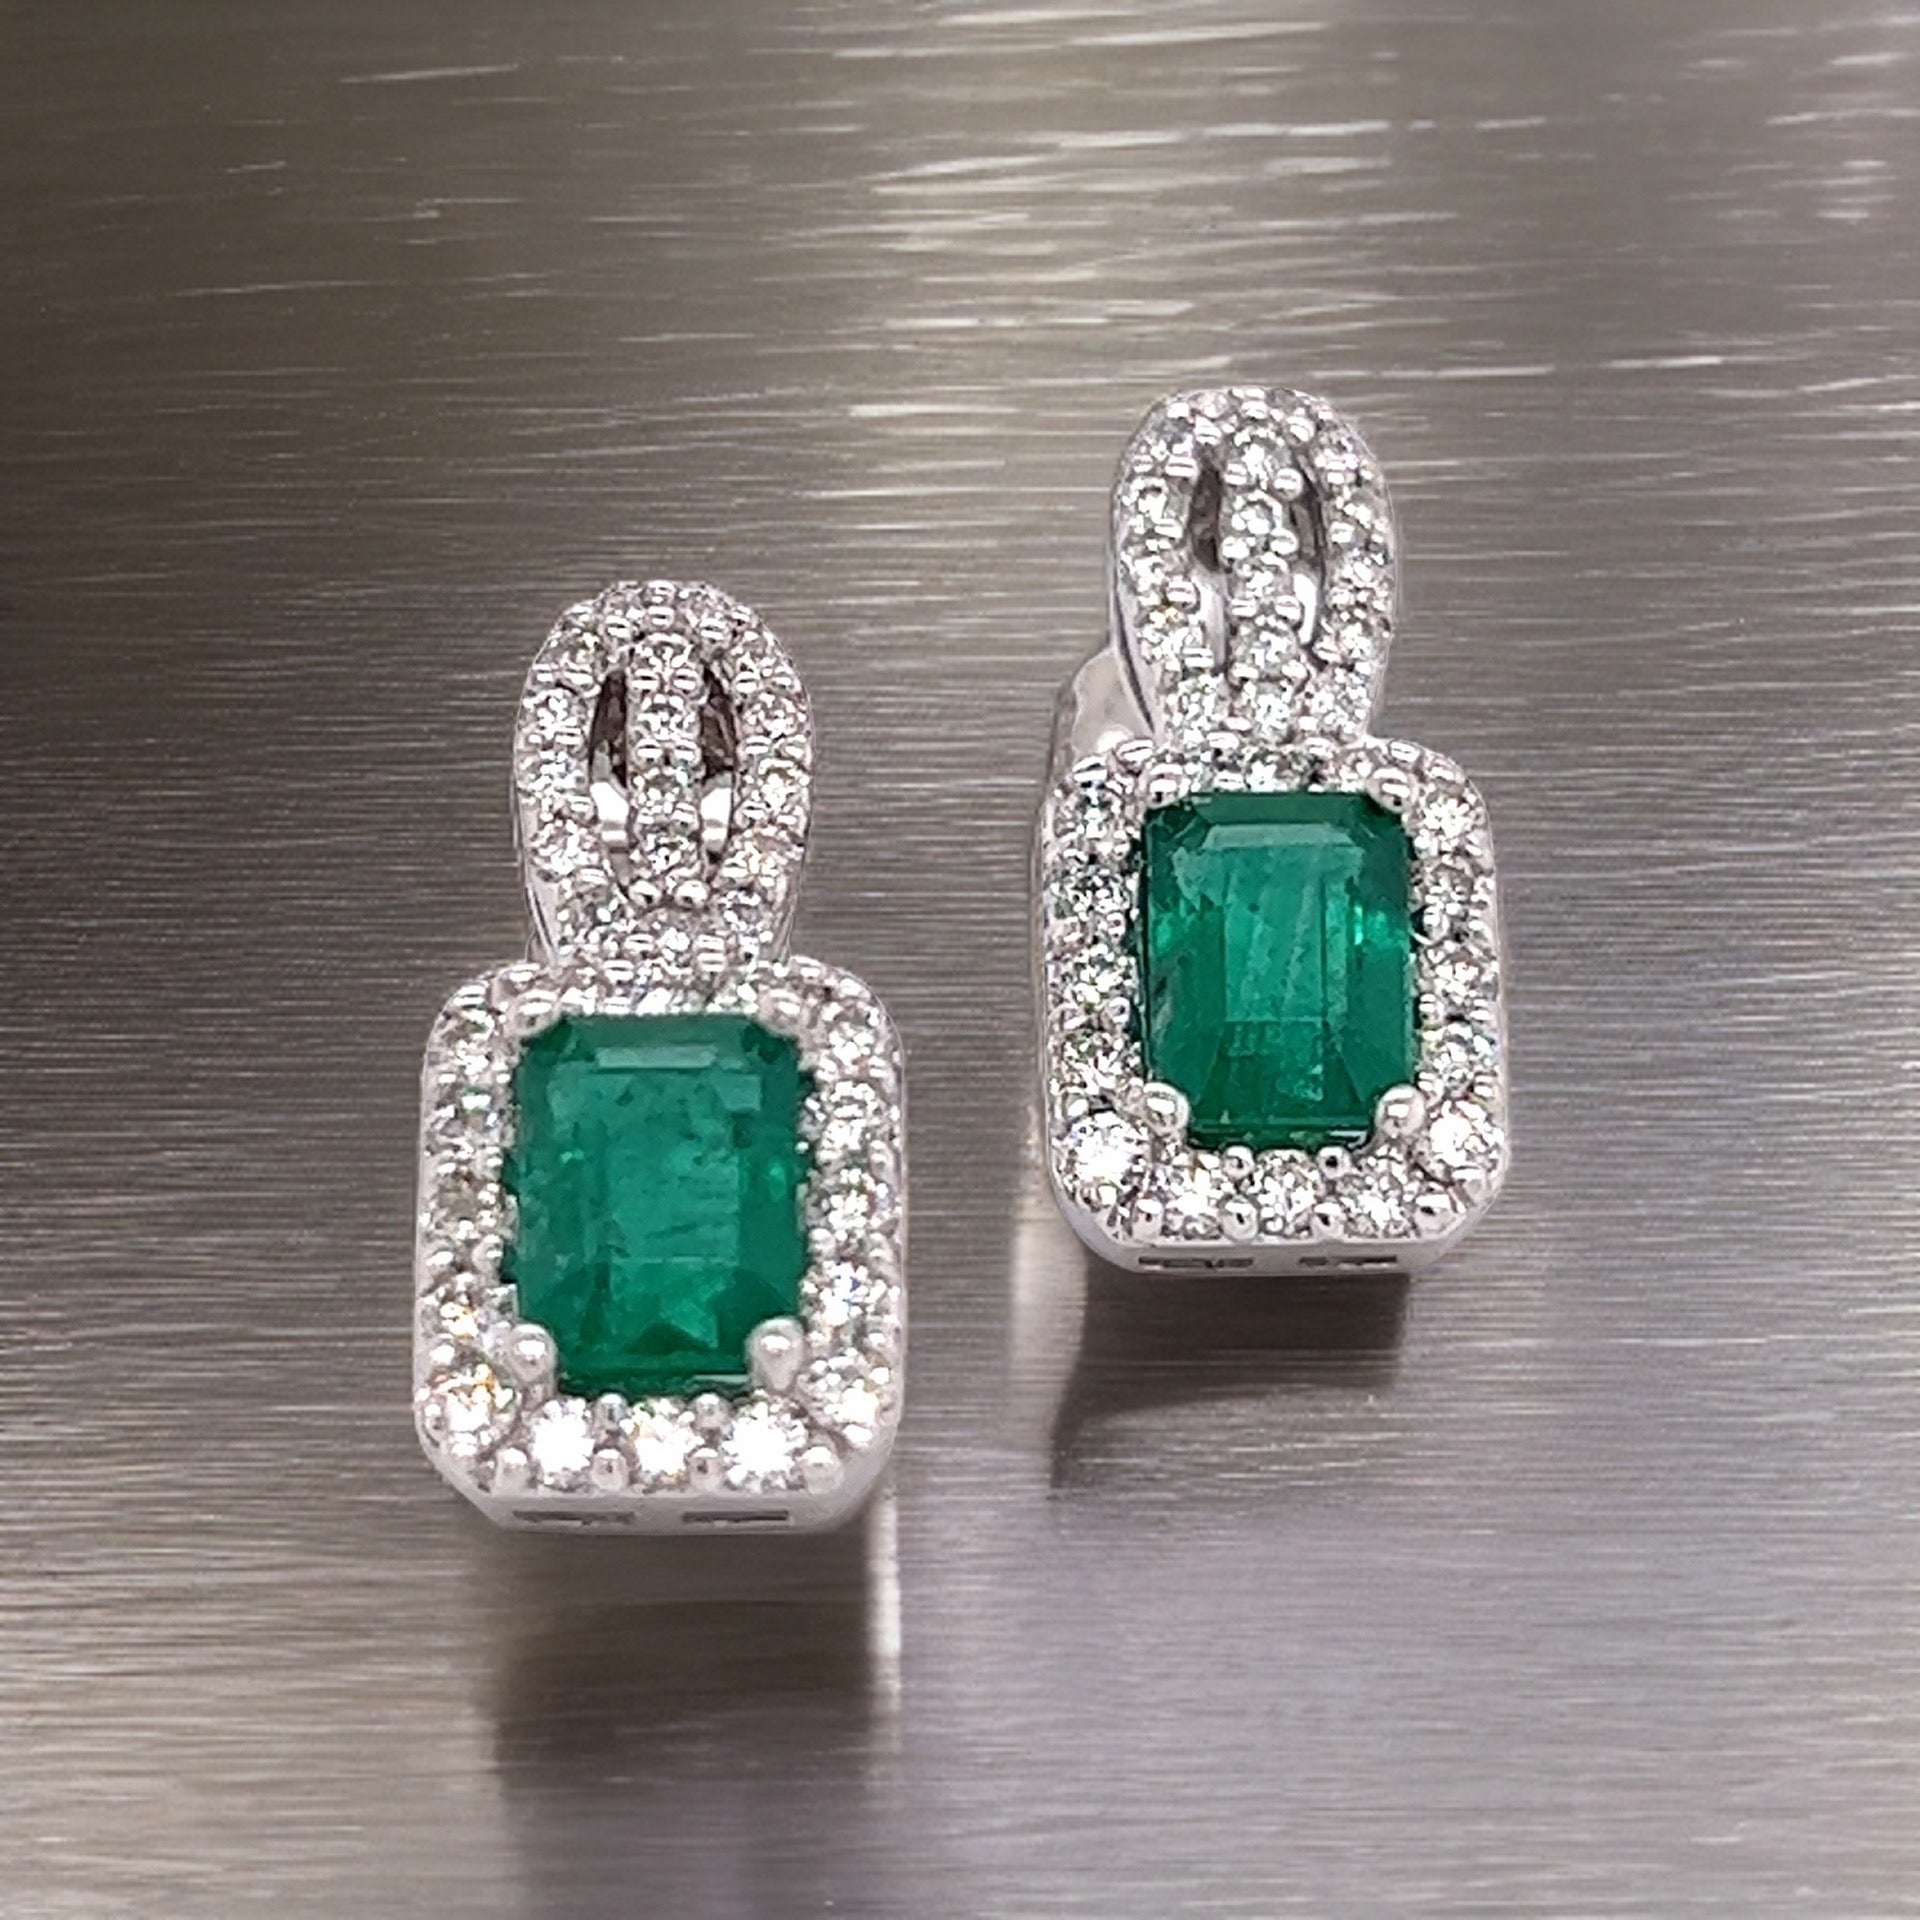 Natural Emerald Diamond Stud Earrings 14k Gold 2.74 TCW Certified $6,950 215406 - Certified Fine Jewelry